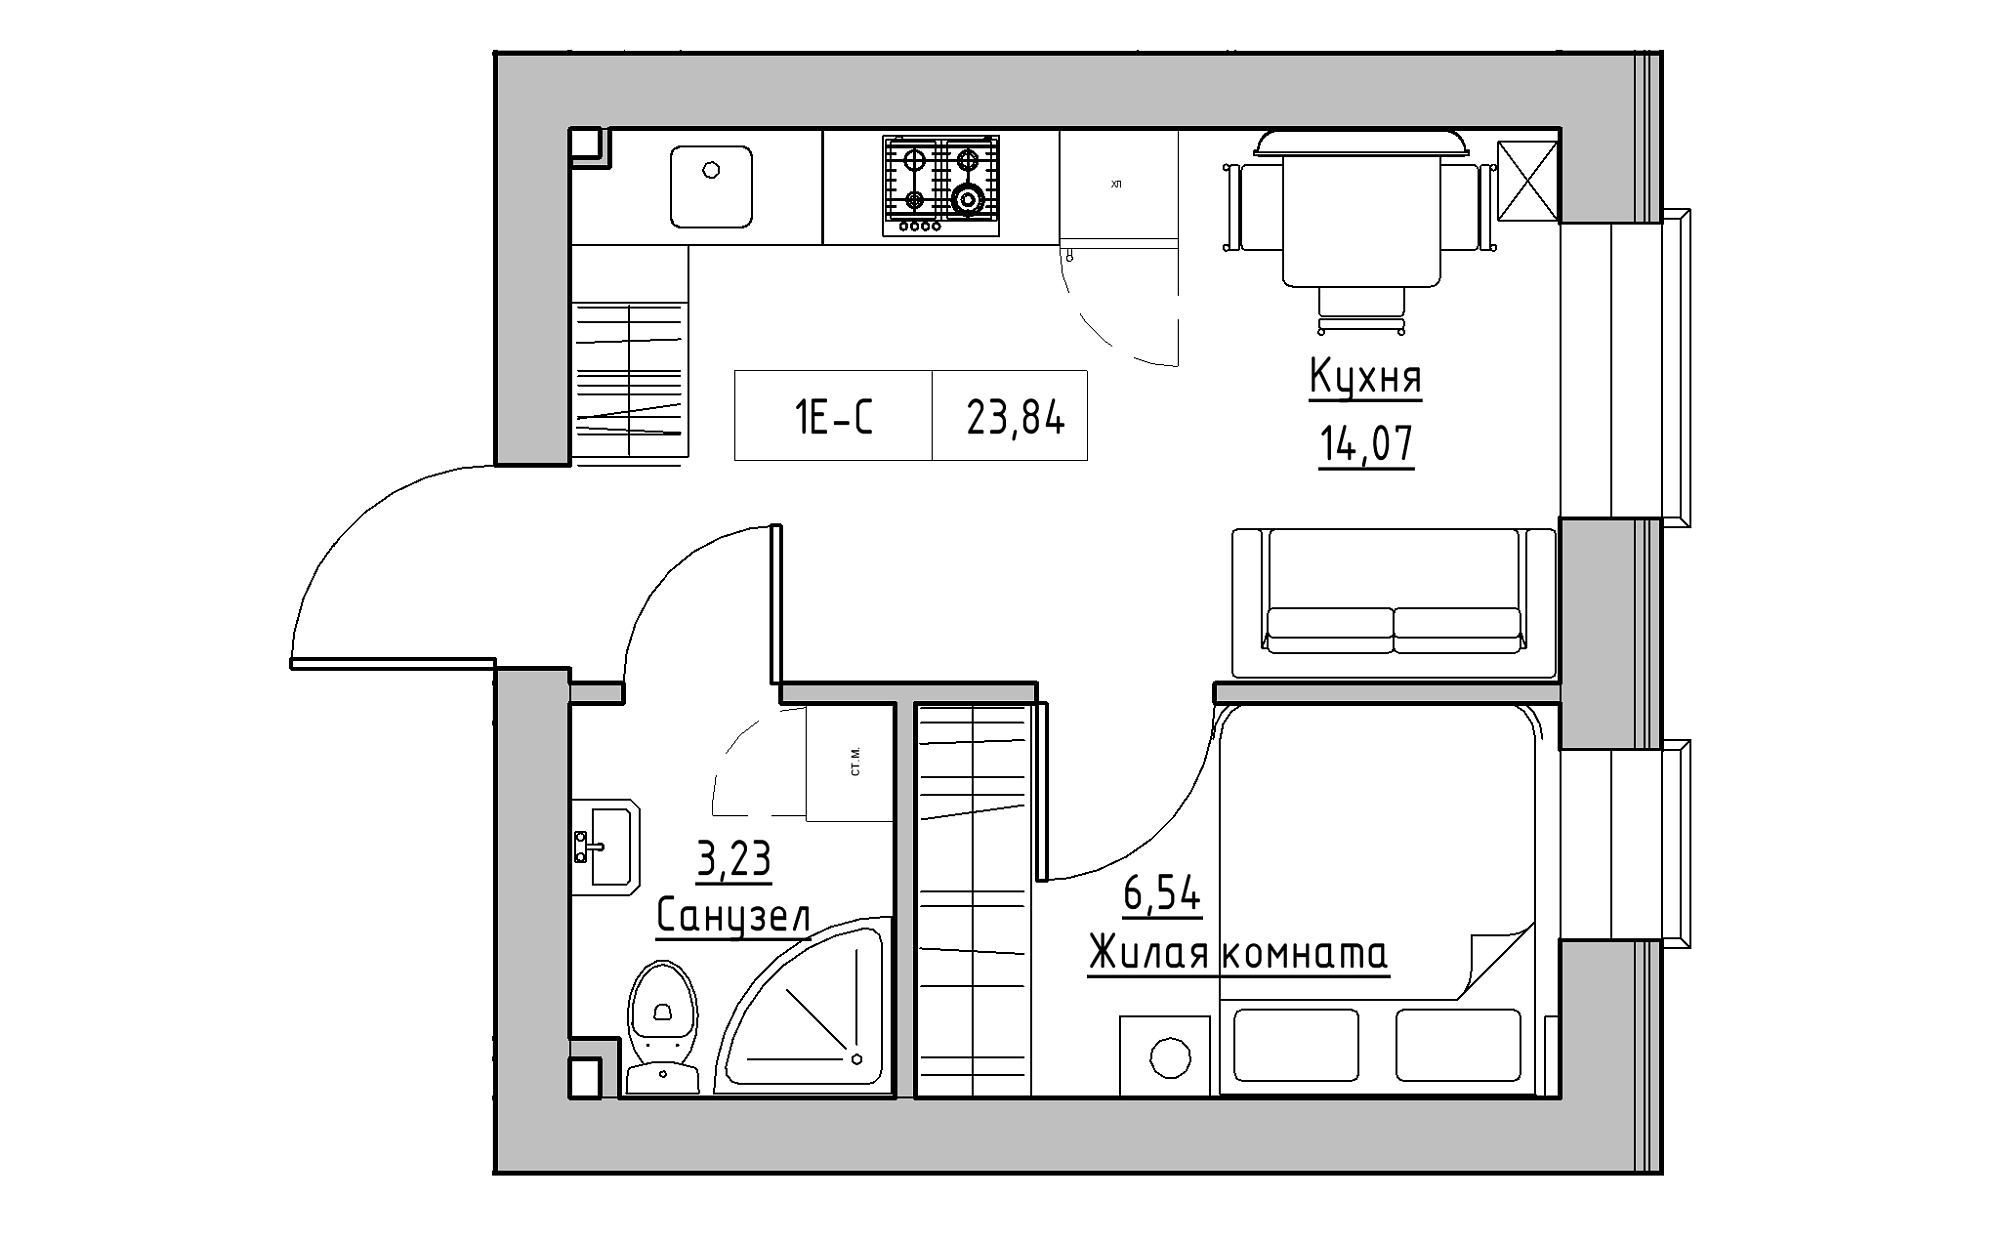 Планування 1-к квартира площею 23.84м2, KS-022-04/0011.